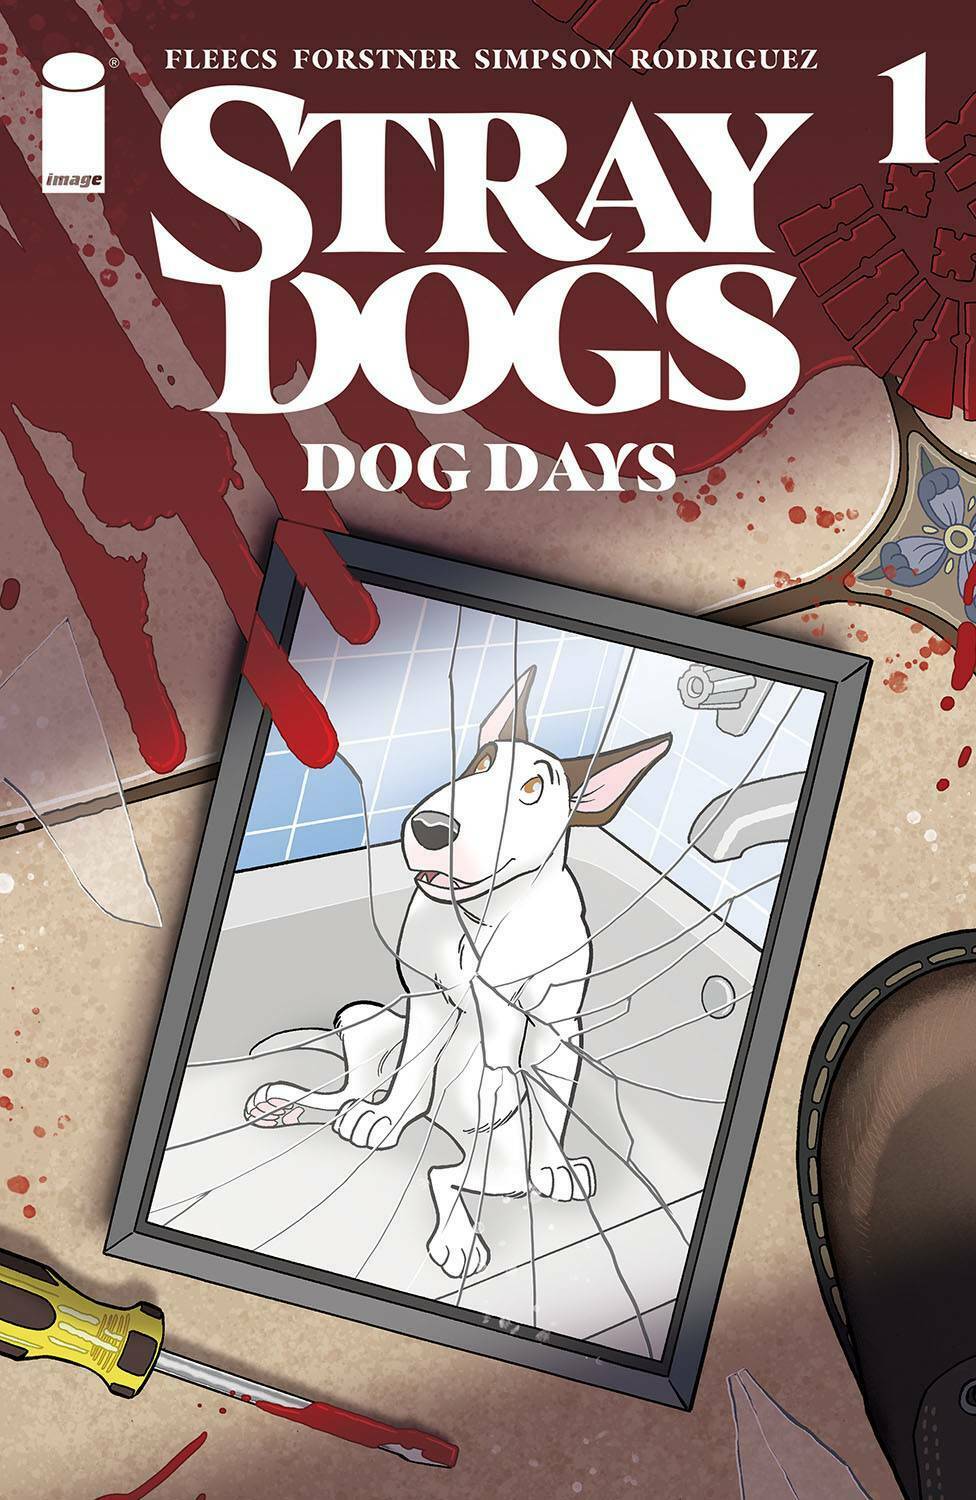 STRAY DOGS DOG DAYS #1 (OF 2) CVR A FORSTNER & FLEECS - The Comic Construct